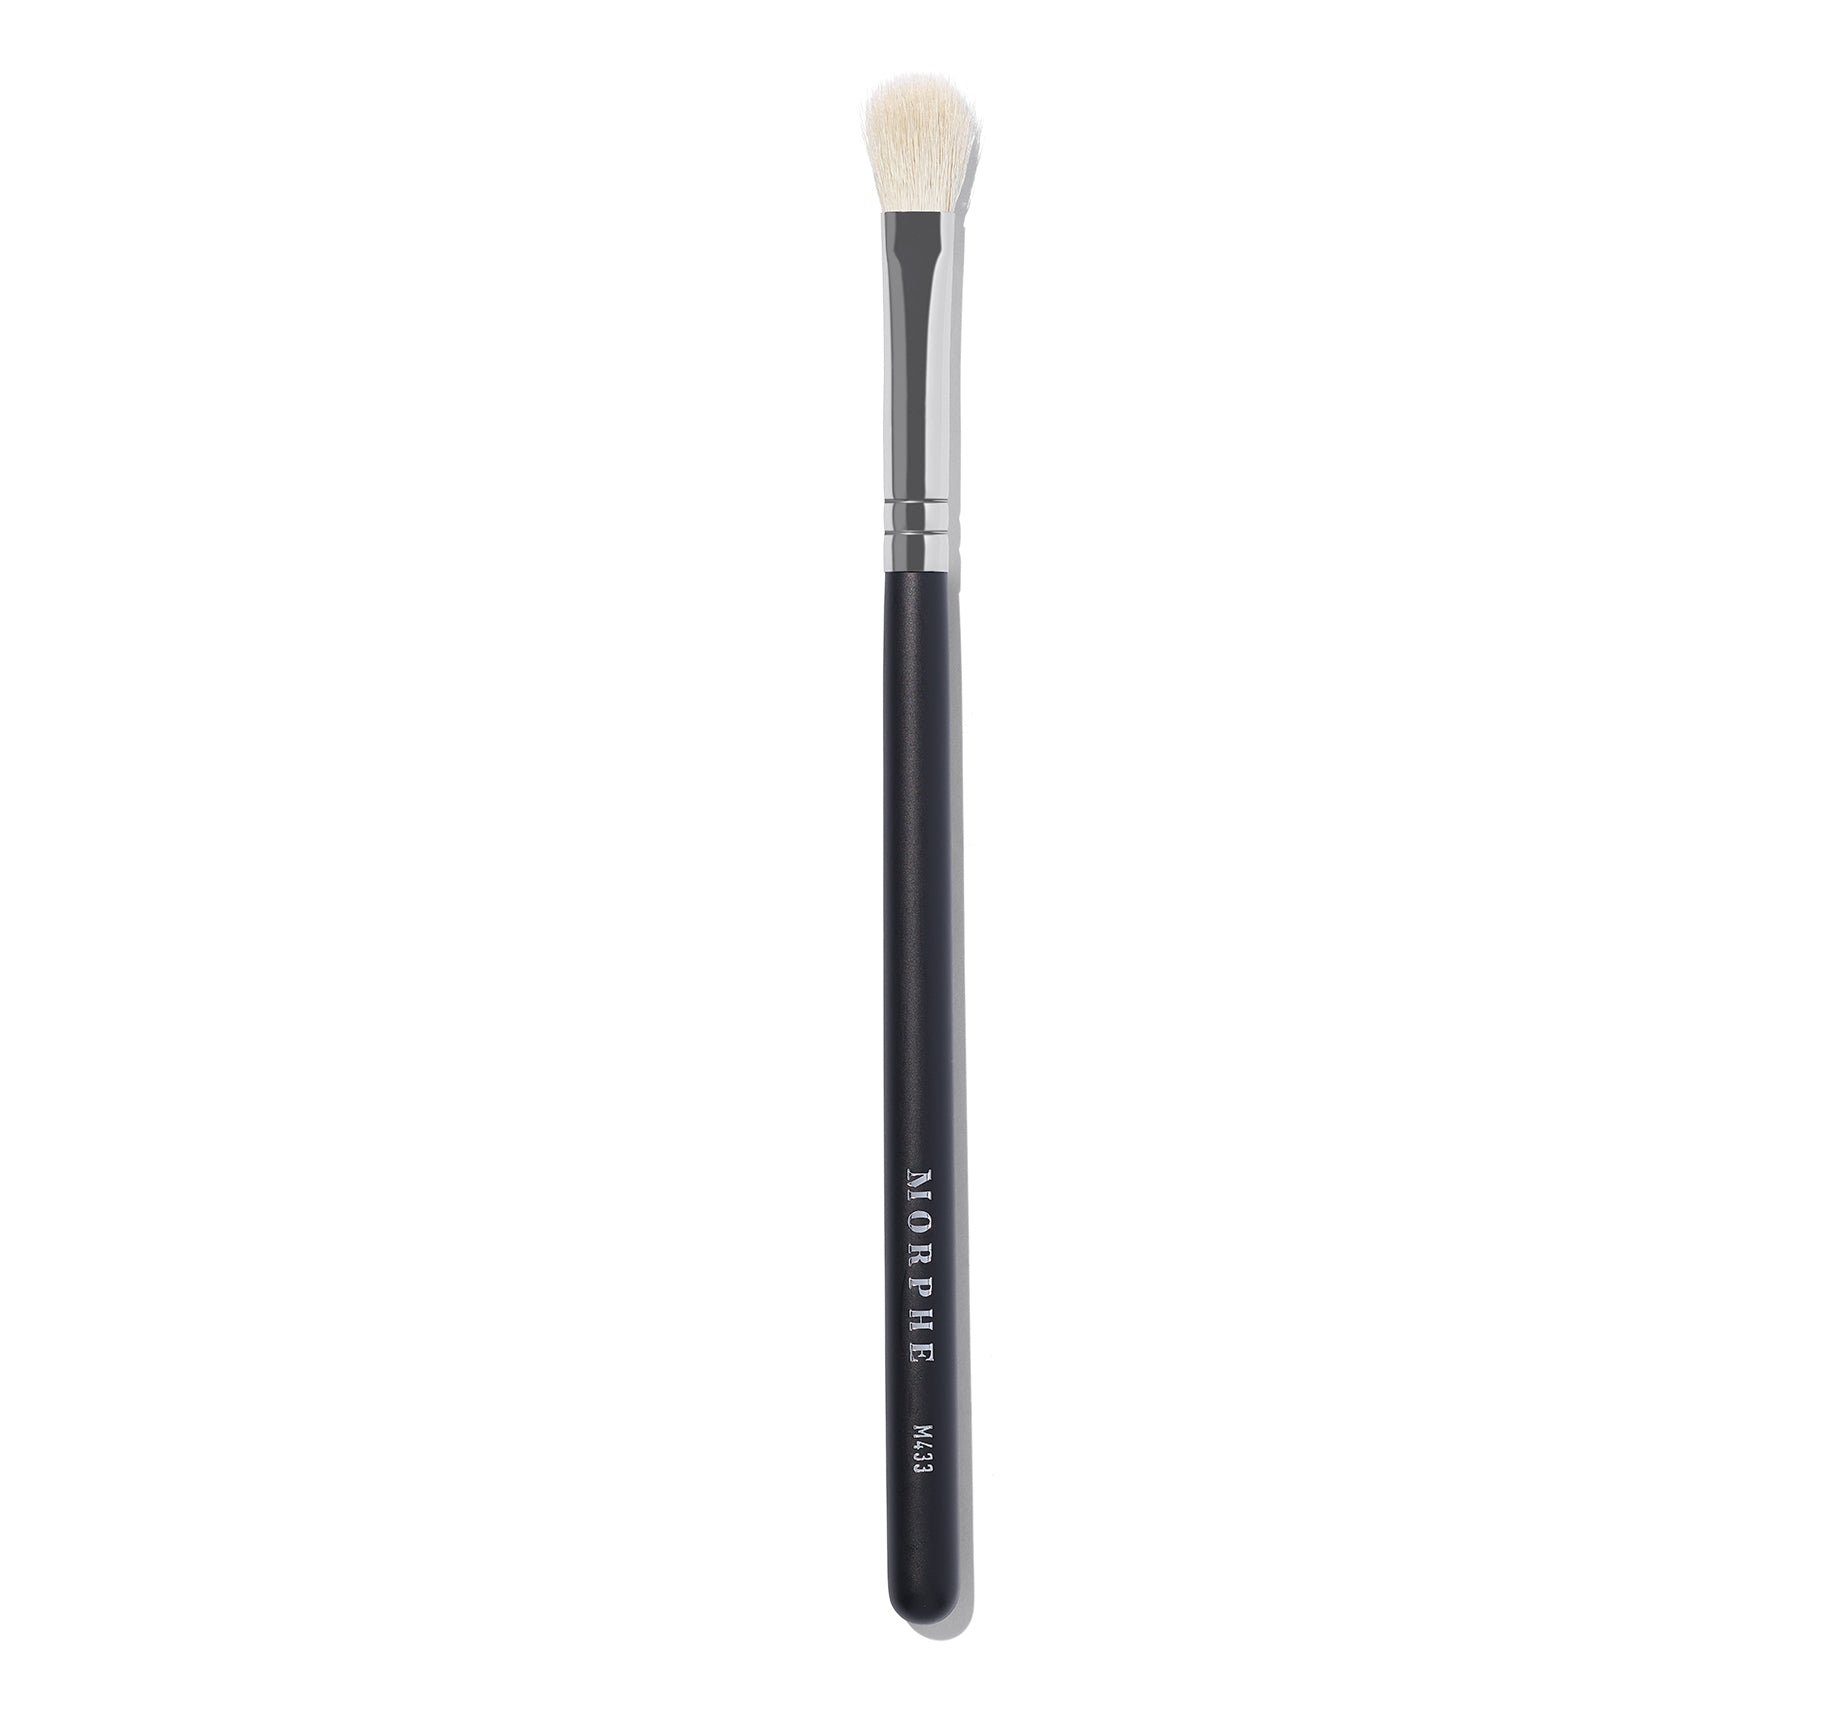 Morphe M433 Pro Firm Blending Fluff Brush for seamless eyeshadow blending on Beauty Chic Avenue.